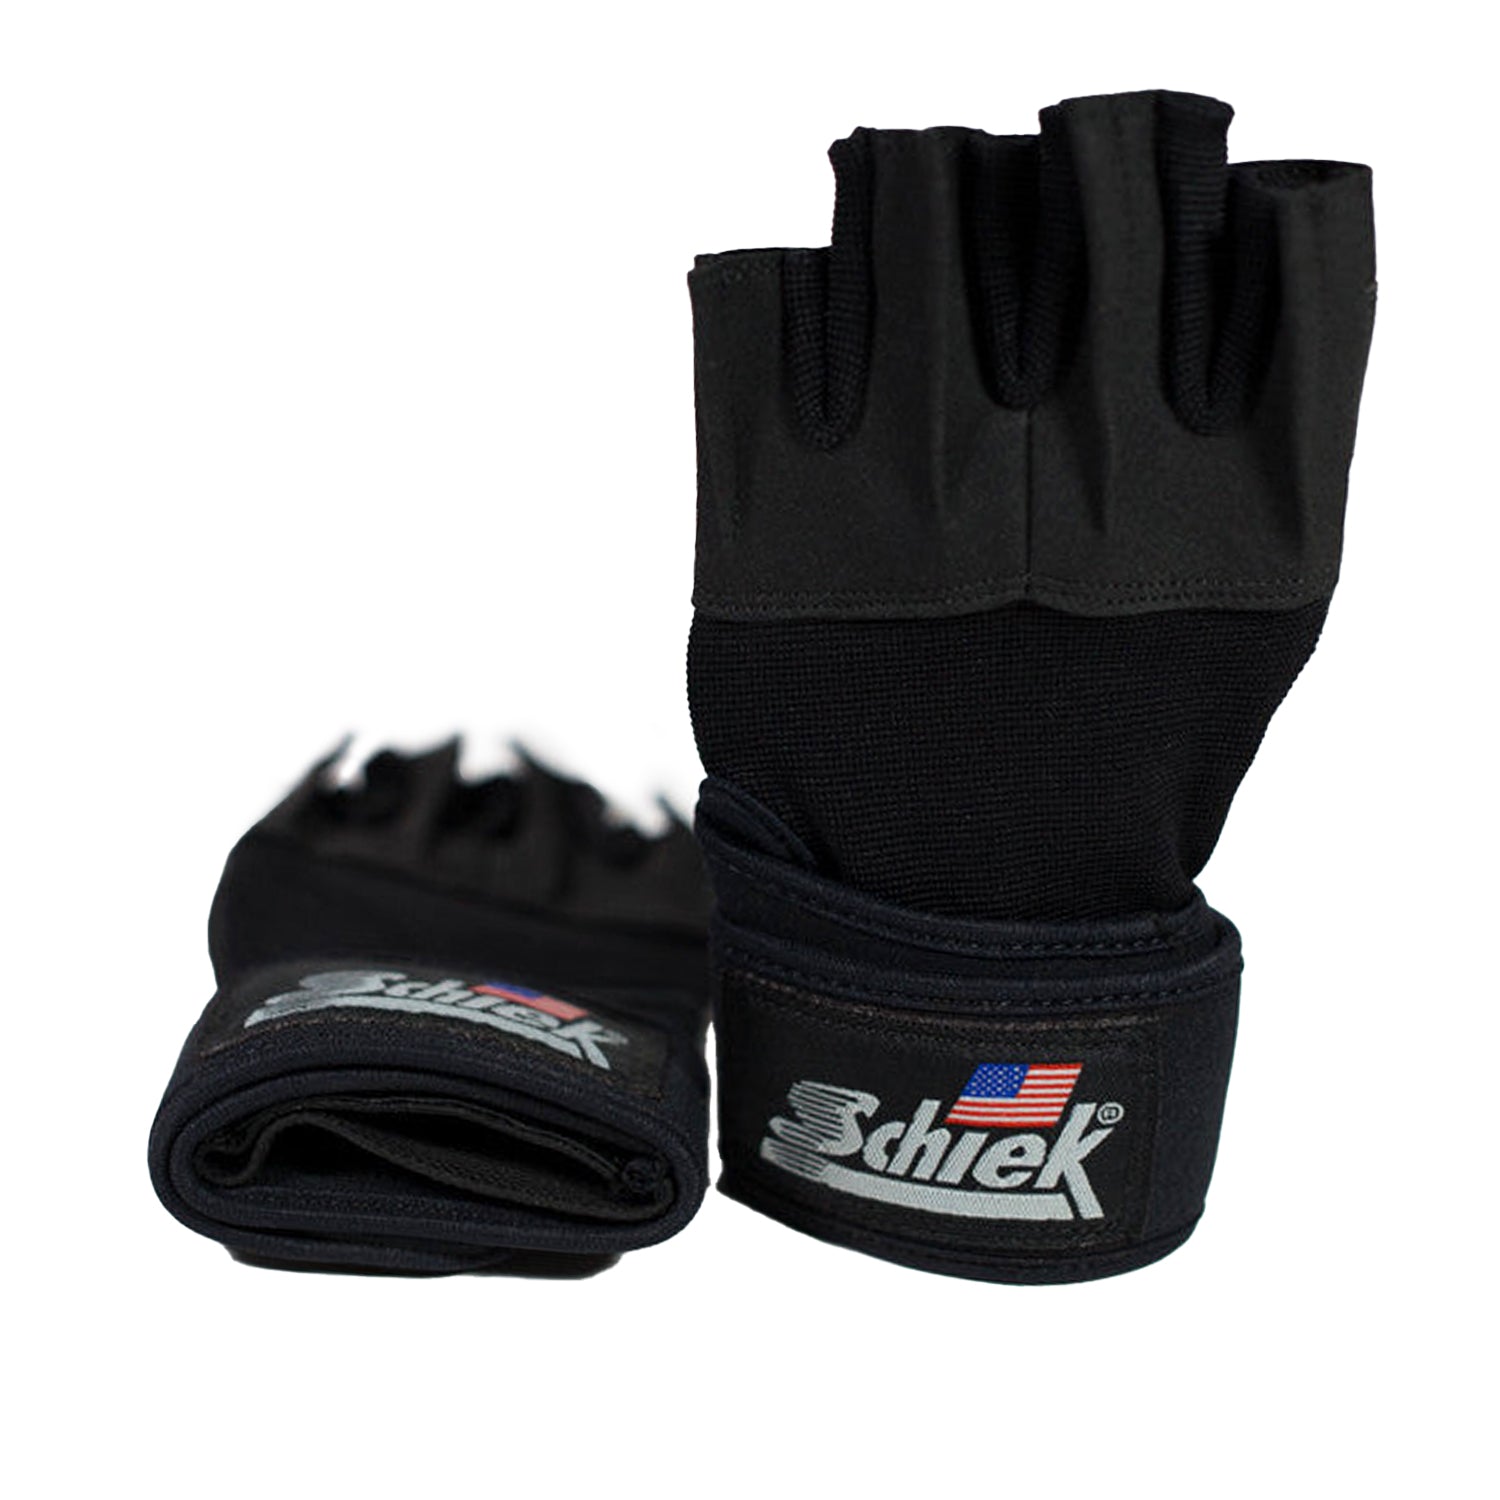 http://jaycutler.com/cdn/shop/products/20220215_LI_Schiek_Lifting_Gloves.jpg?v=1644964759